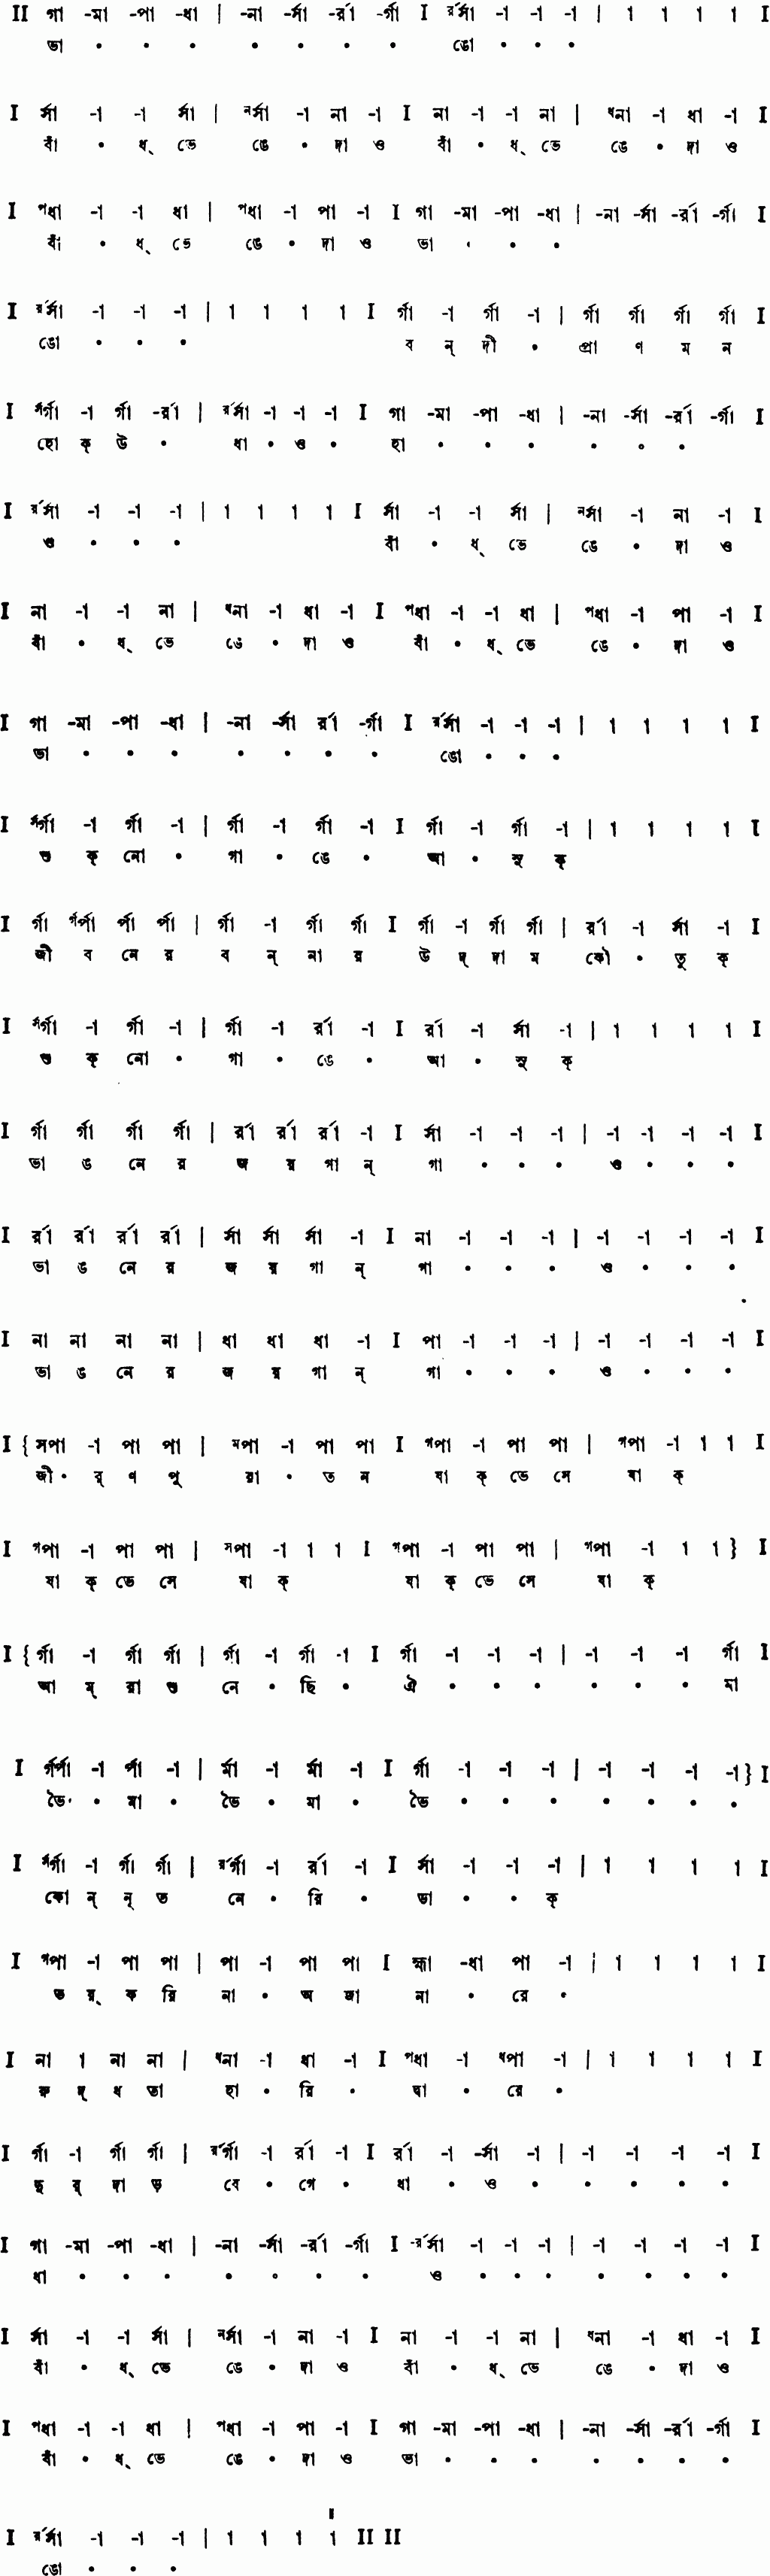 Notation bhango badh bhenge dao